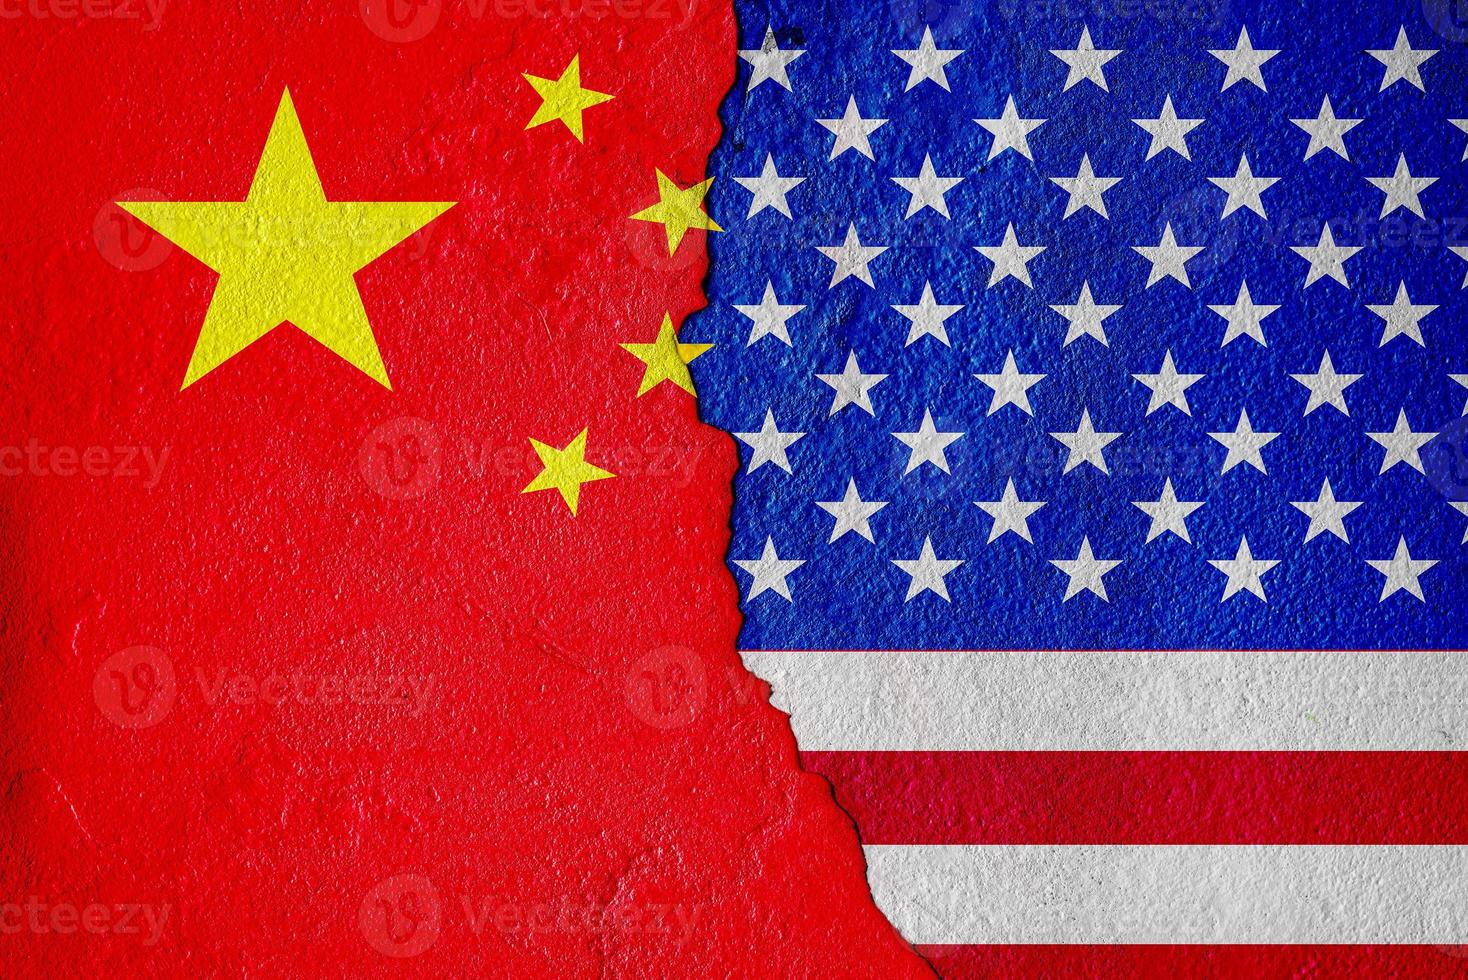 la bandera de los estados unidos de américa y la bandera de china y la batalla económica pintar en las paredes agrietadas técnica mixta foto